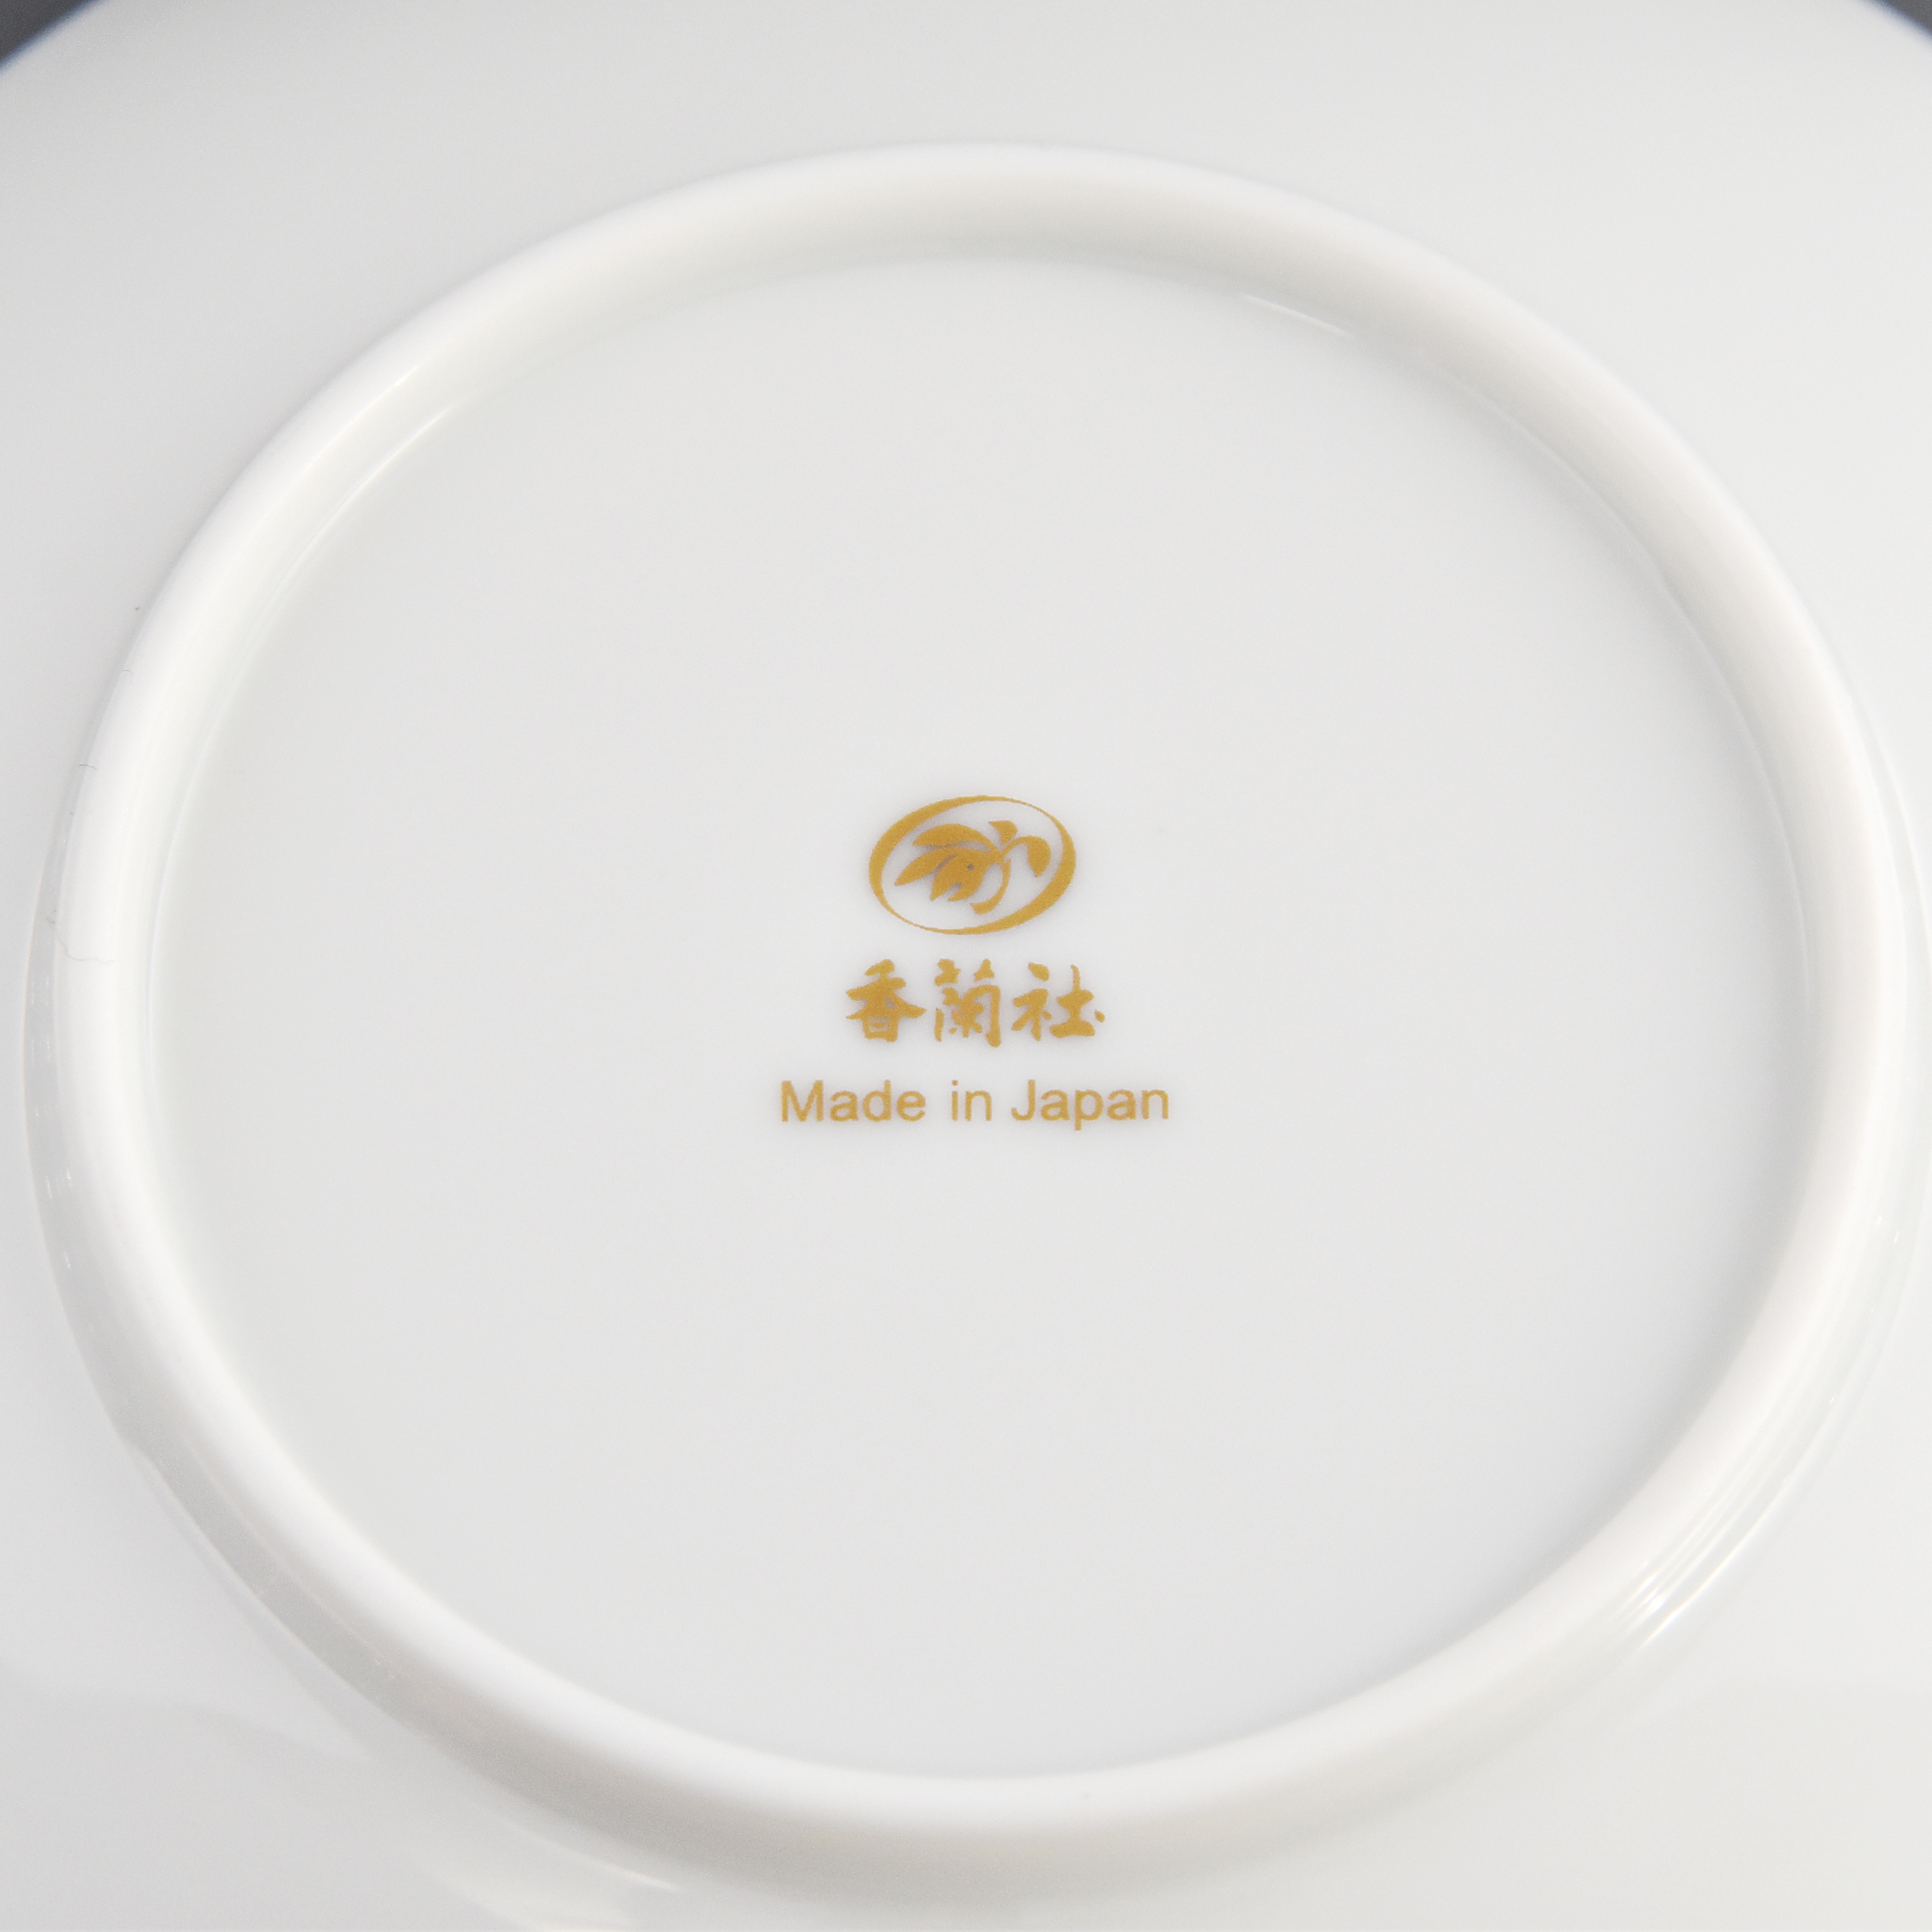 お皿の裏側には香蘭社のオリジナル商品のマークがあります。